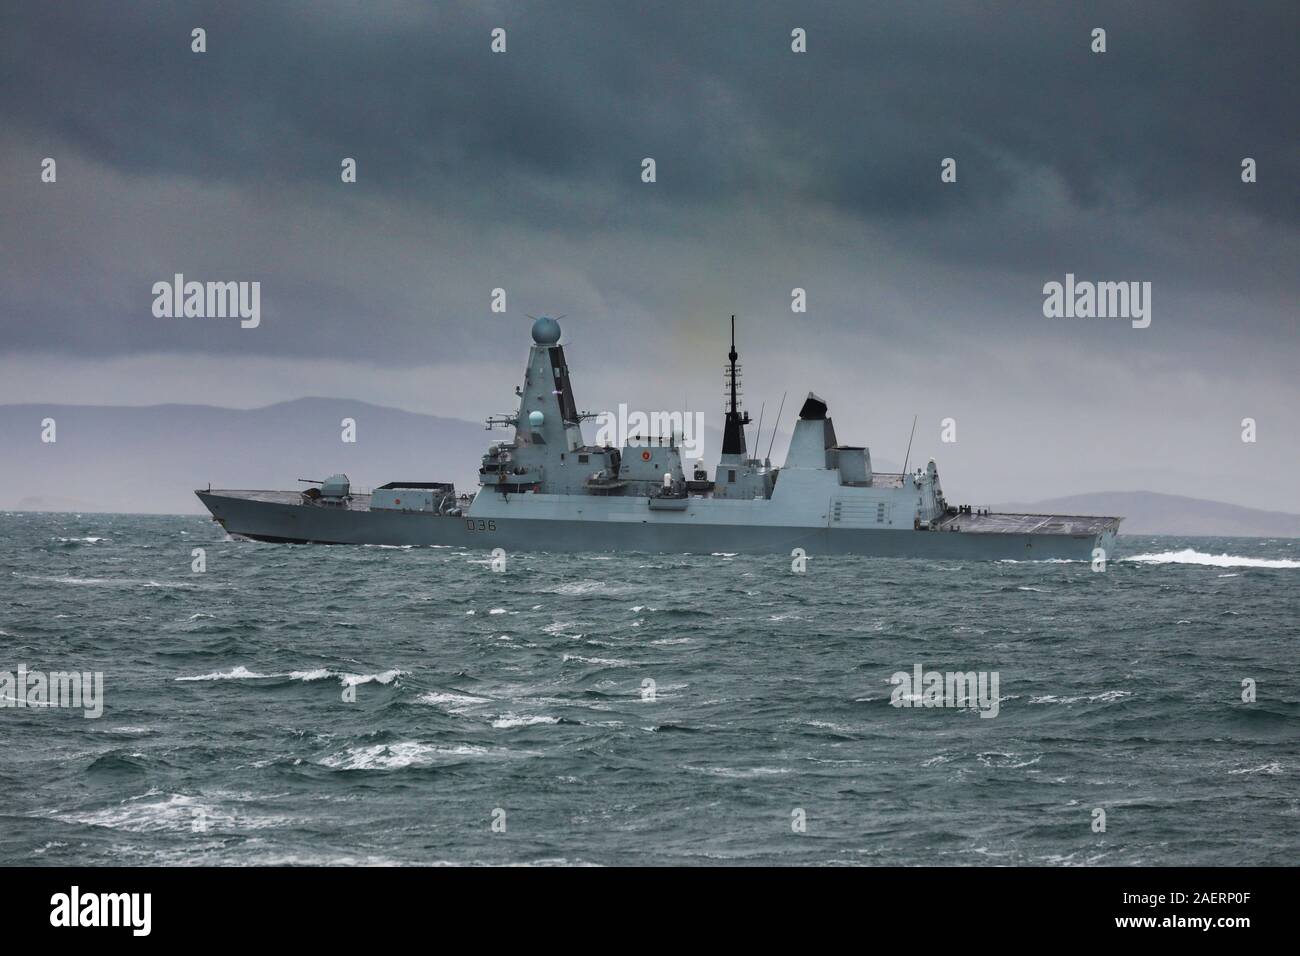 HMS Defender un British Air Defense distruttore di uno dei sei azionato dalla Royal Navy Foto Stock